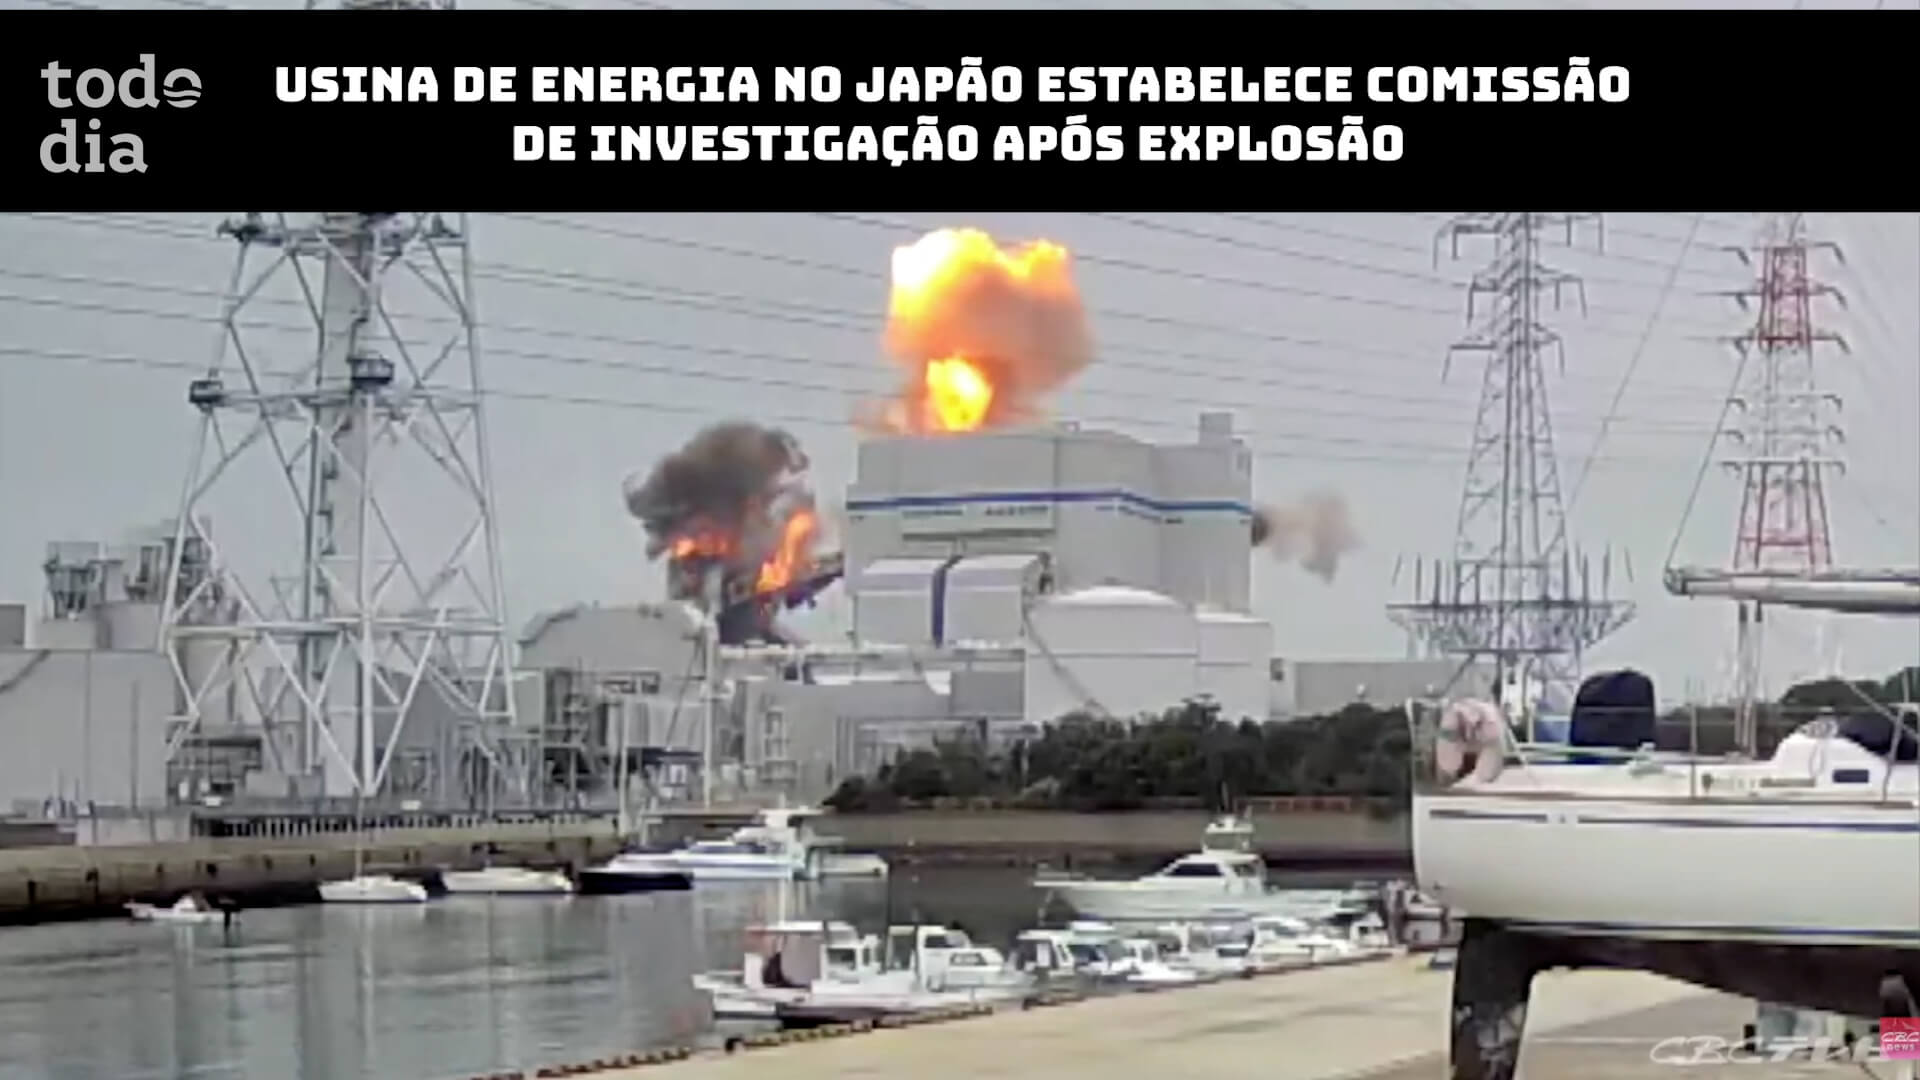 Usina de energia no Japão estabelece comissão de investigação após explosão 